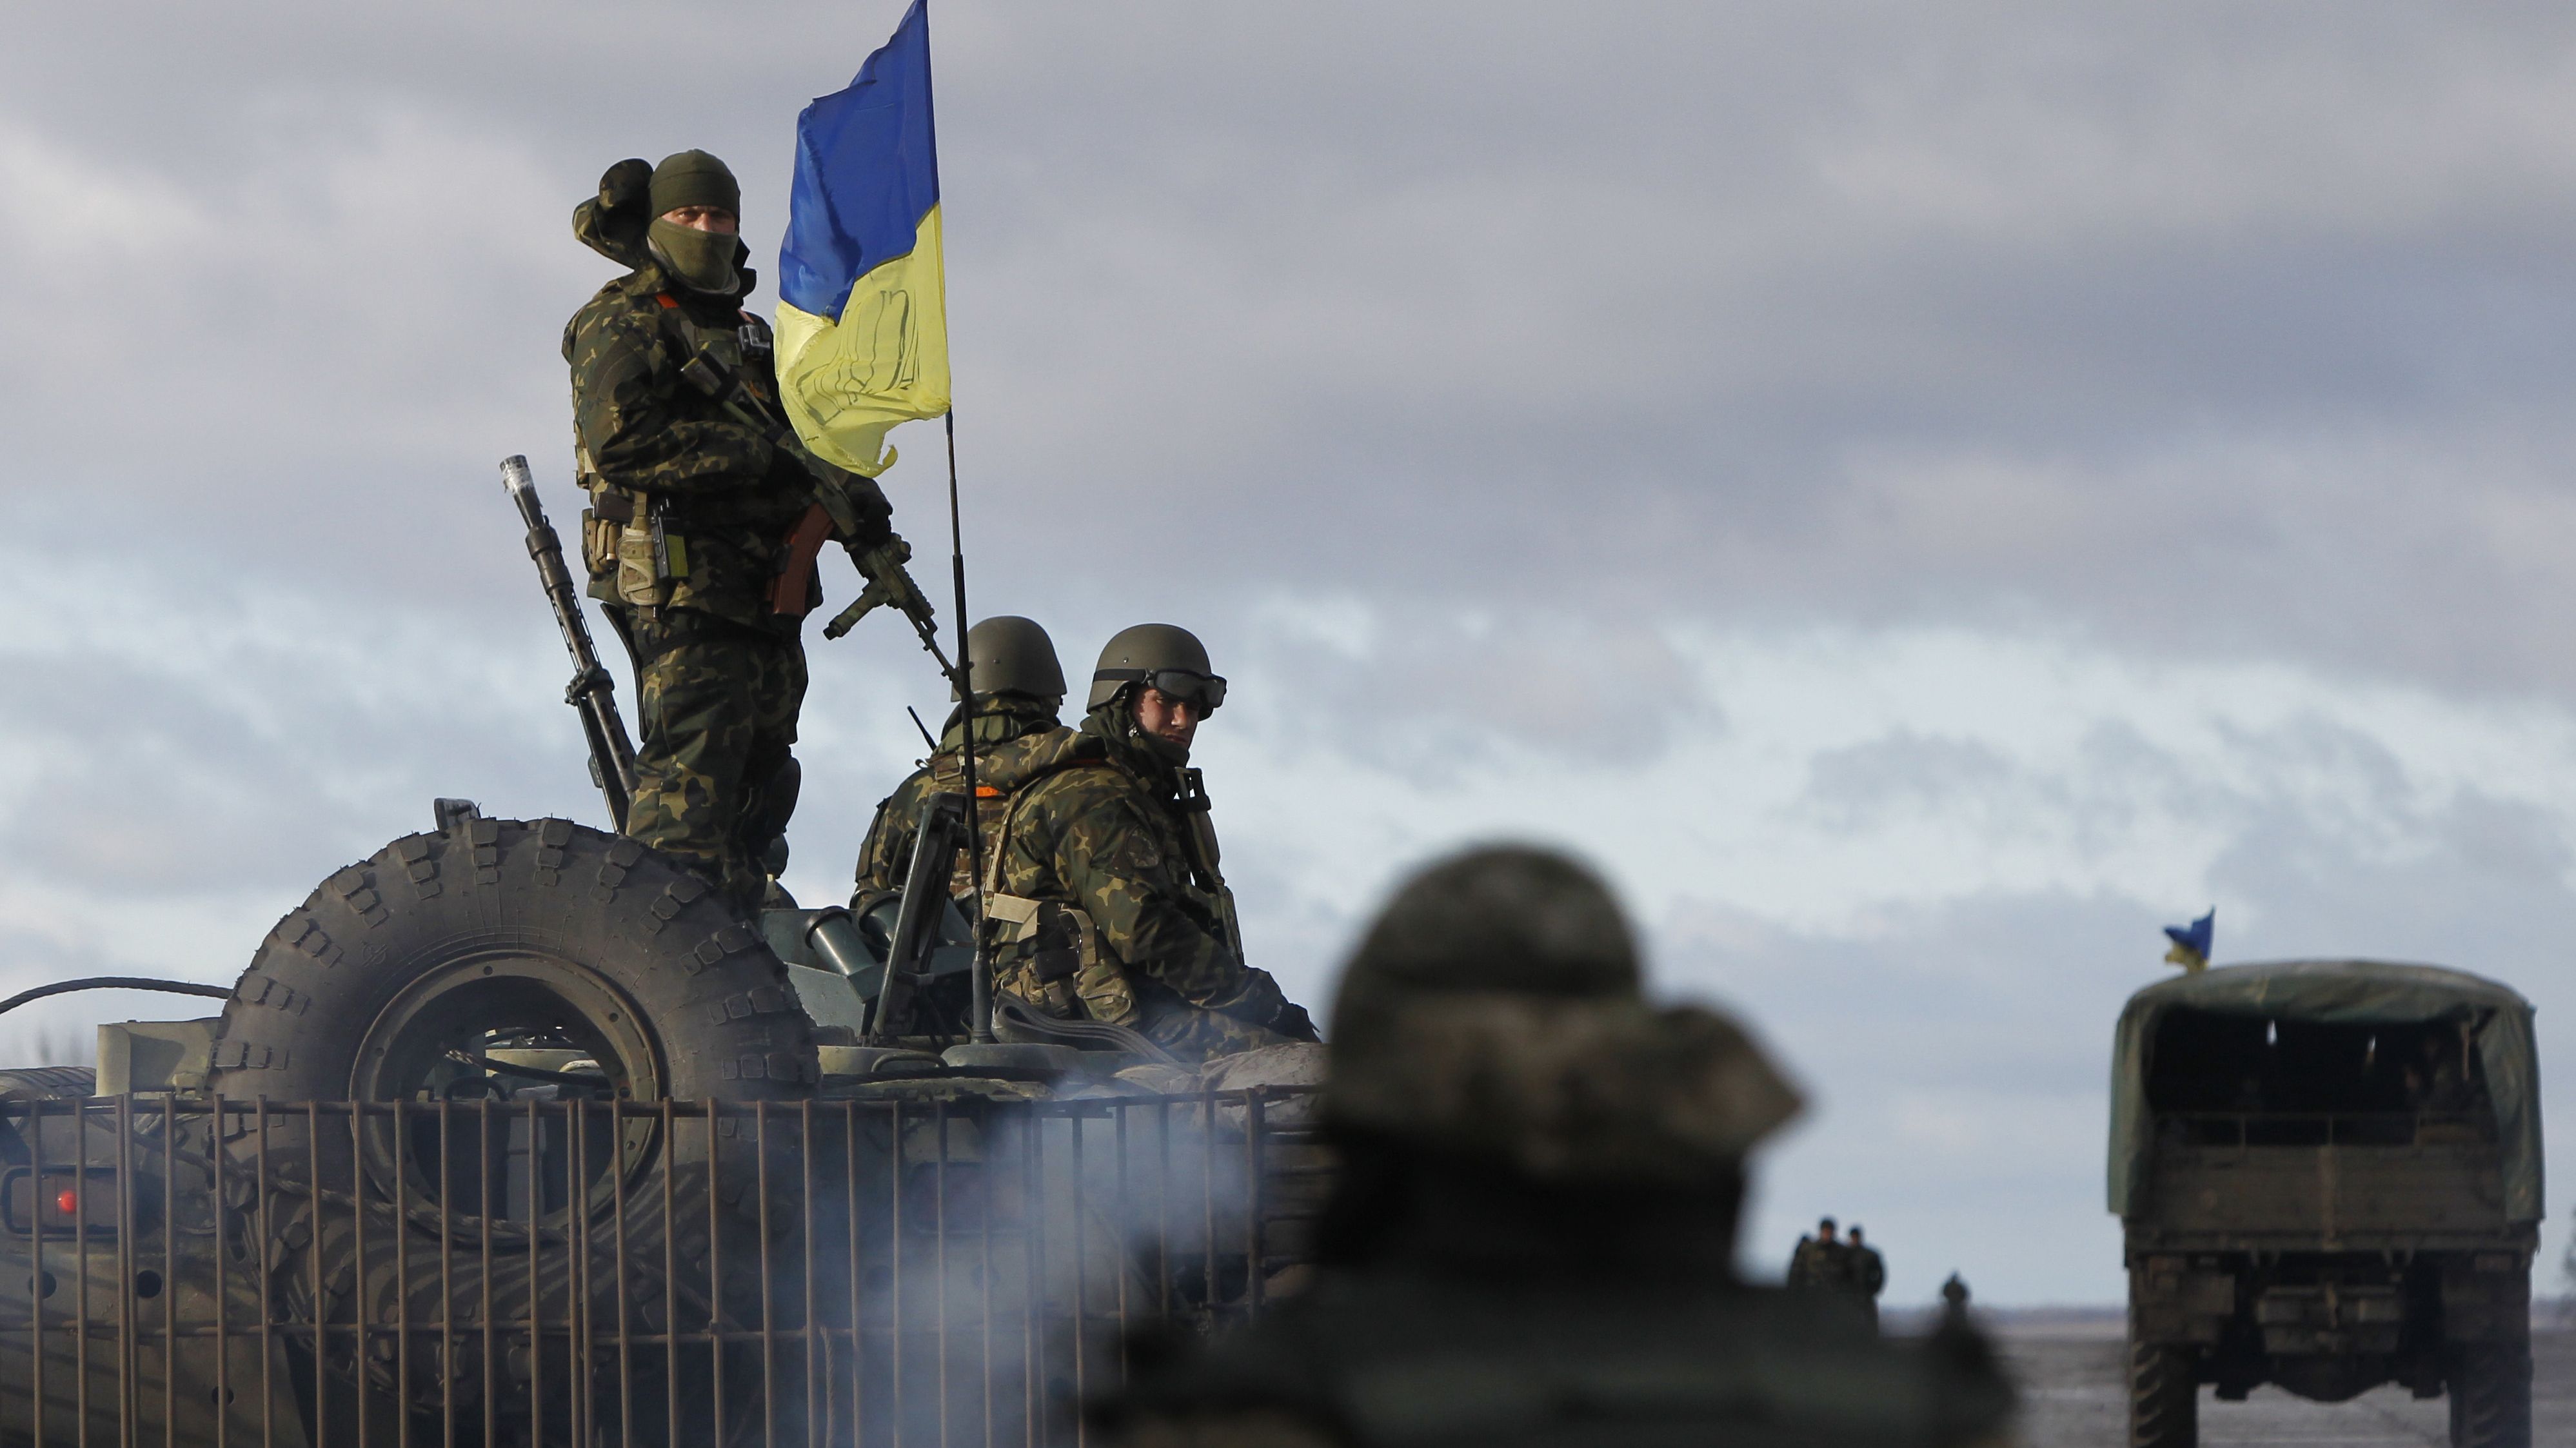 Договориться, то договорились, но предупредить об этом  украинских силовиков забыли